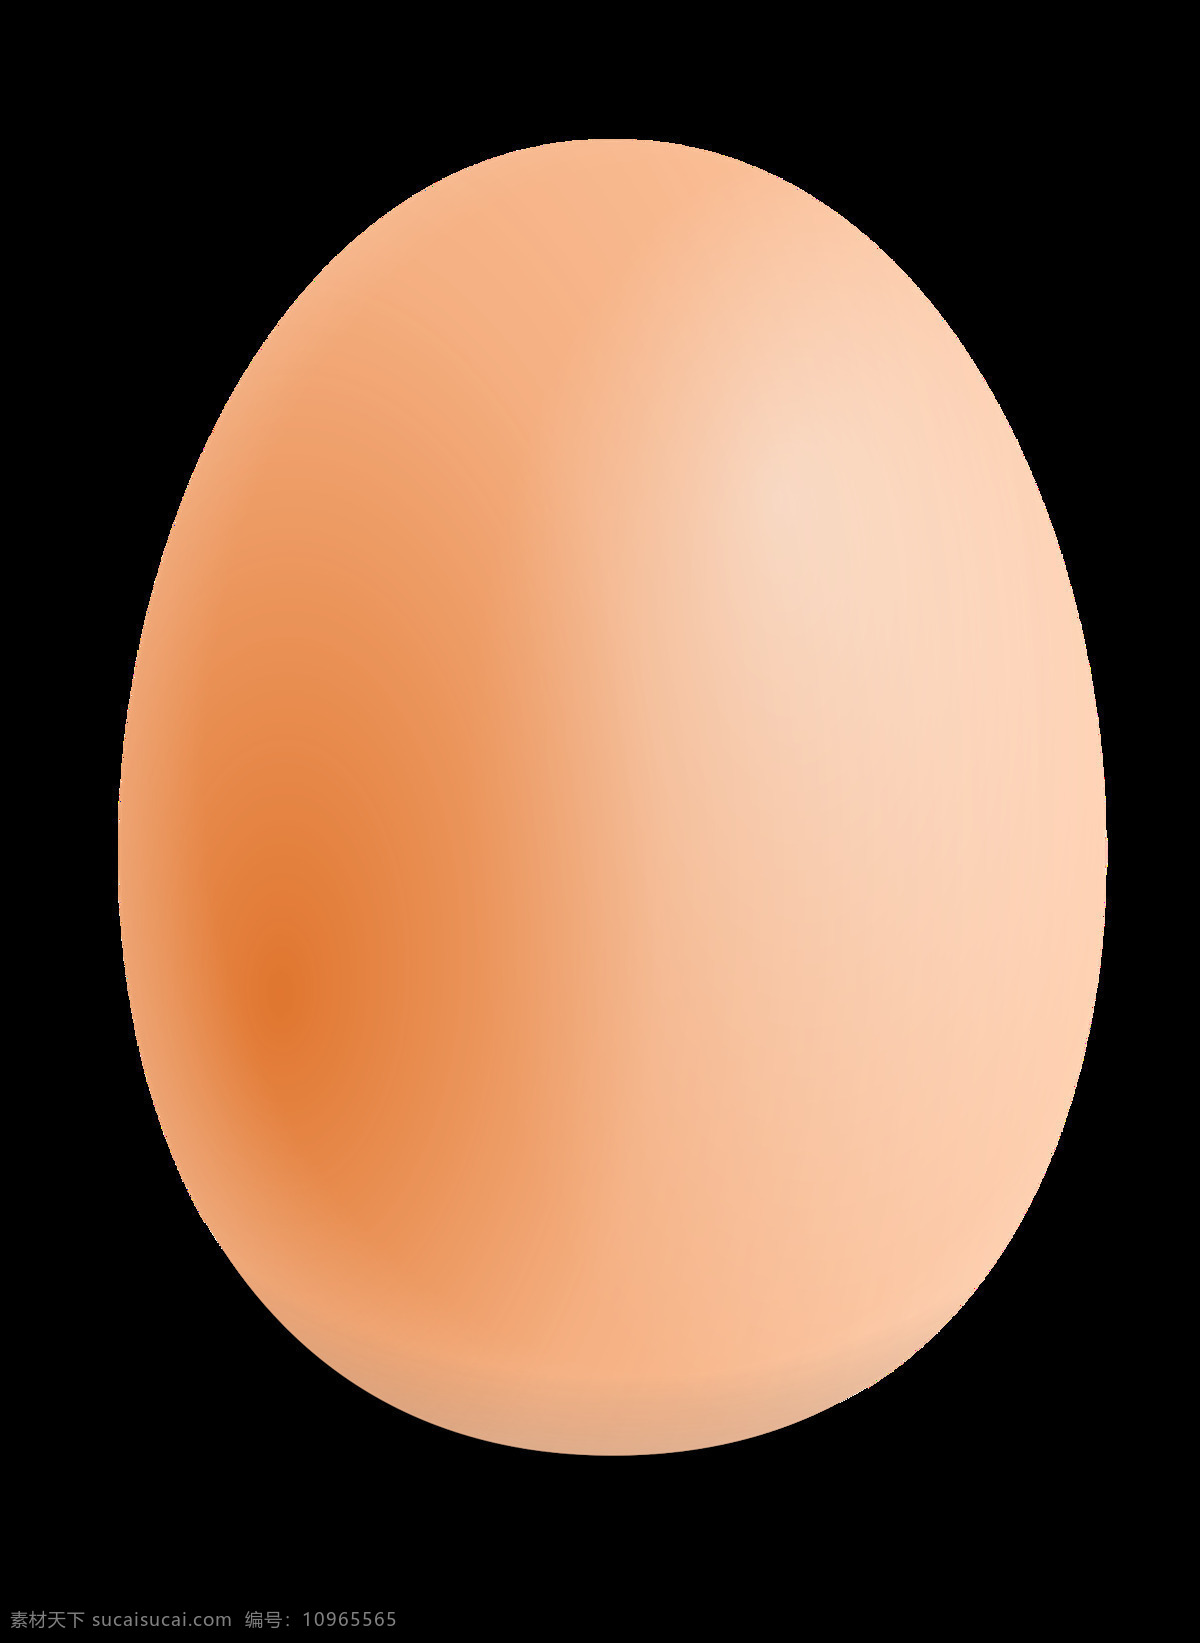 鸡蛋图片 鸡蛋 蛋 蛋黄 蛋清 png图 透明图 免扣图 透明背景 透明底 抠图